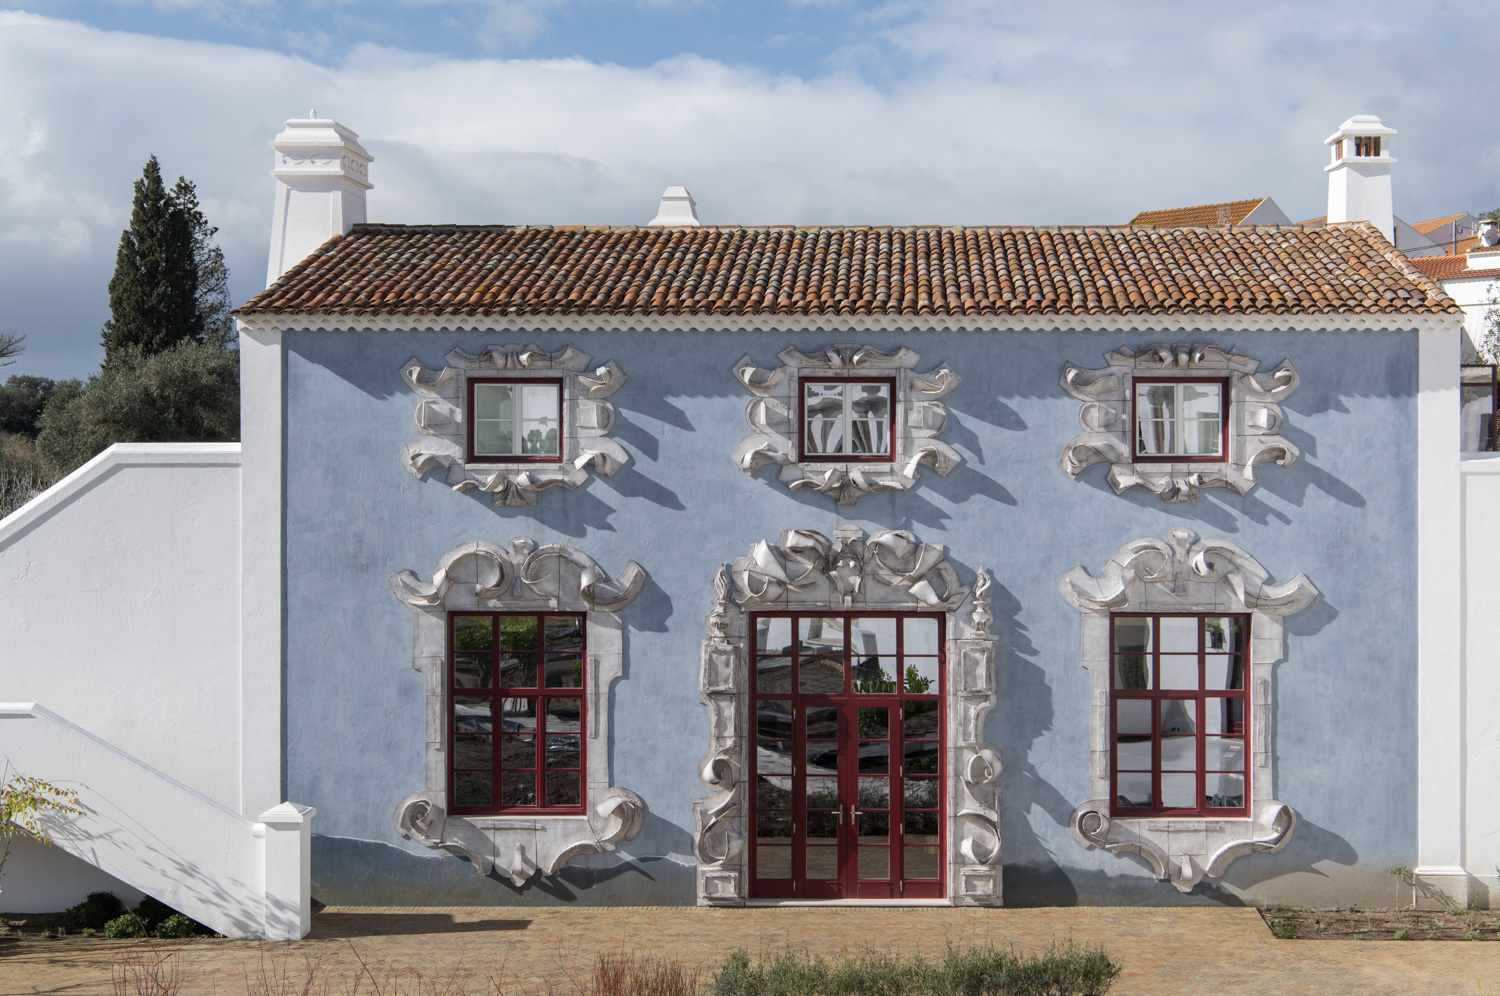 Avant-première : Christian Louboutin nous ouvre les portes de son nouvel hôtel au Portugal